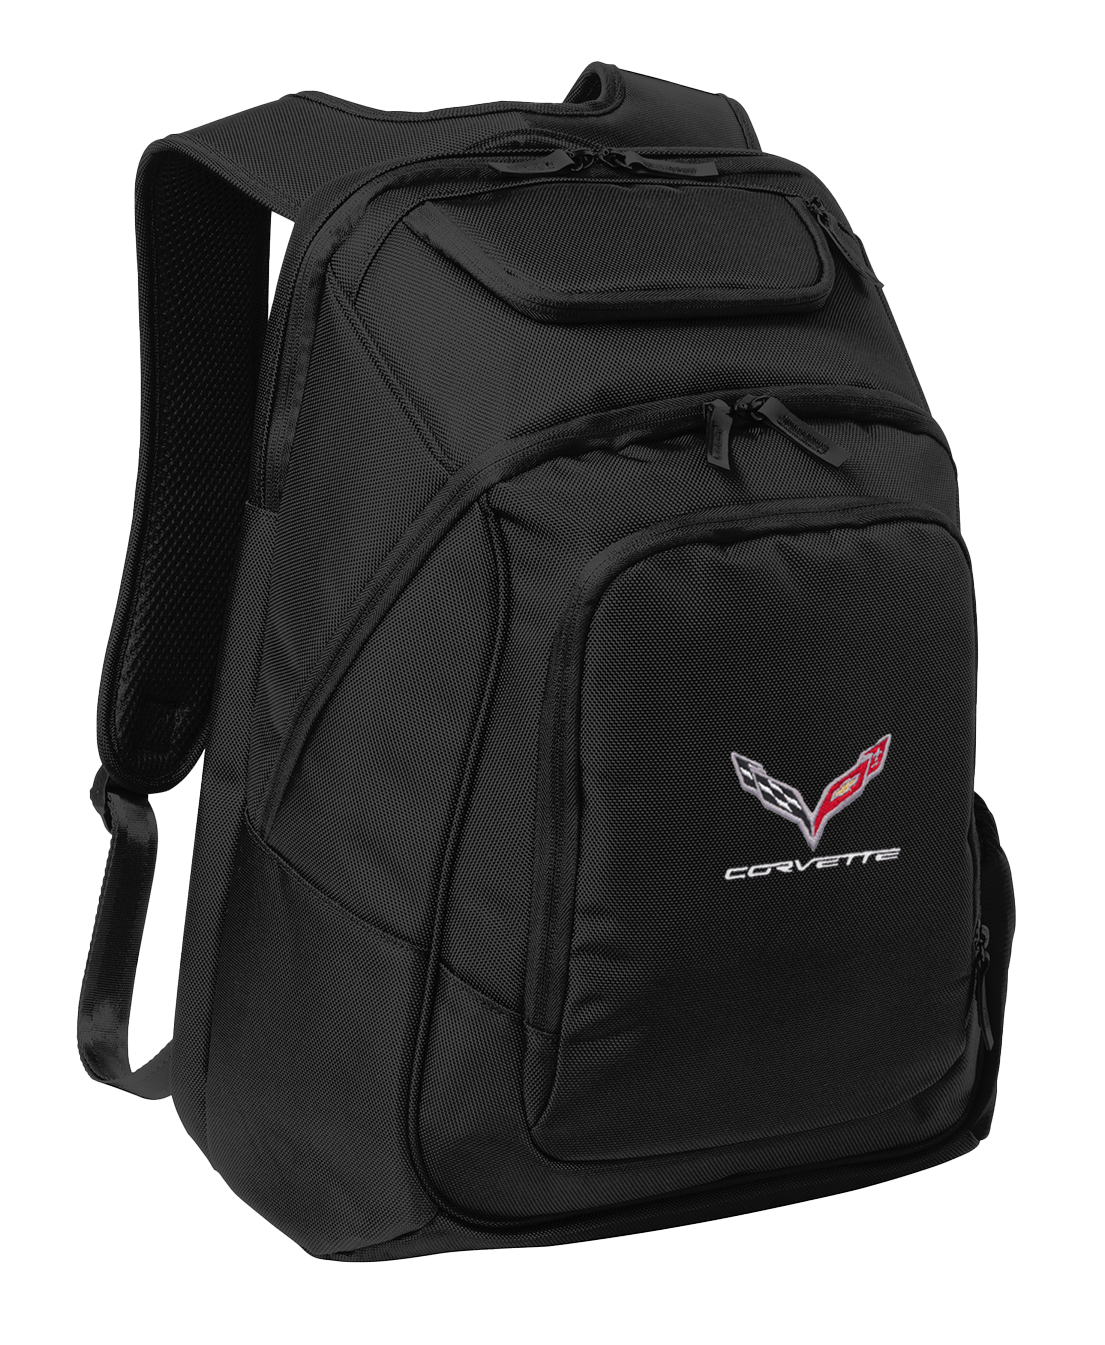 c7-corvette-embroidered-backpack-cvr90010107-corvette-store-online